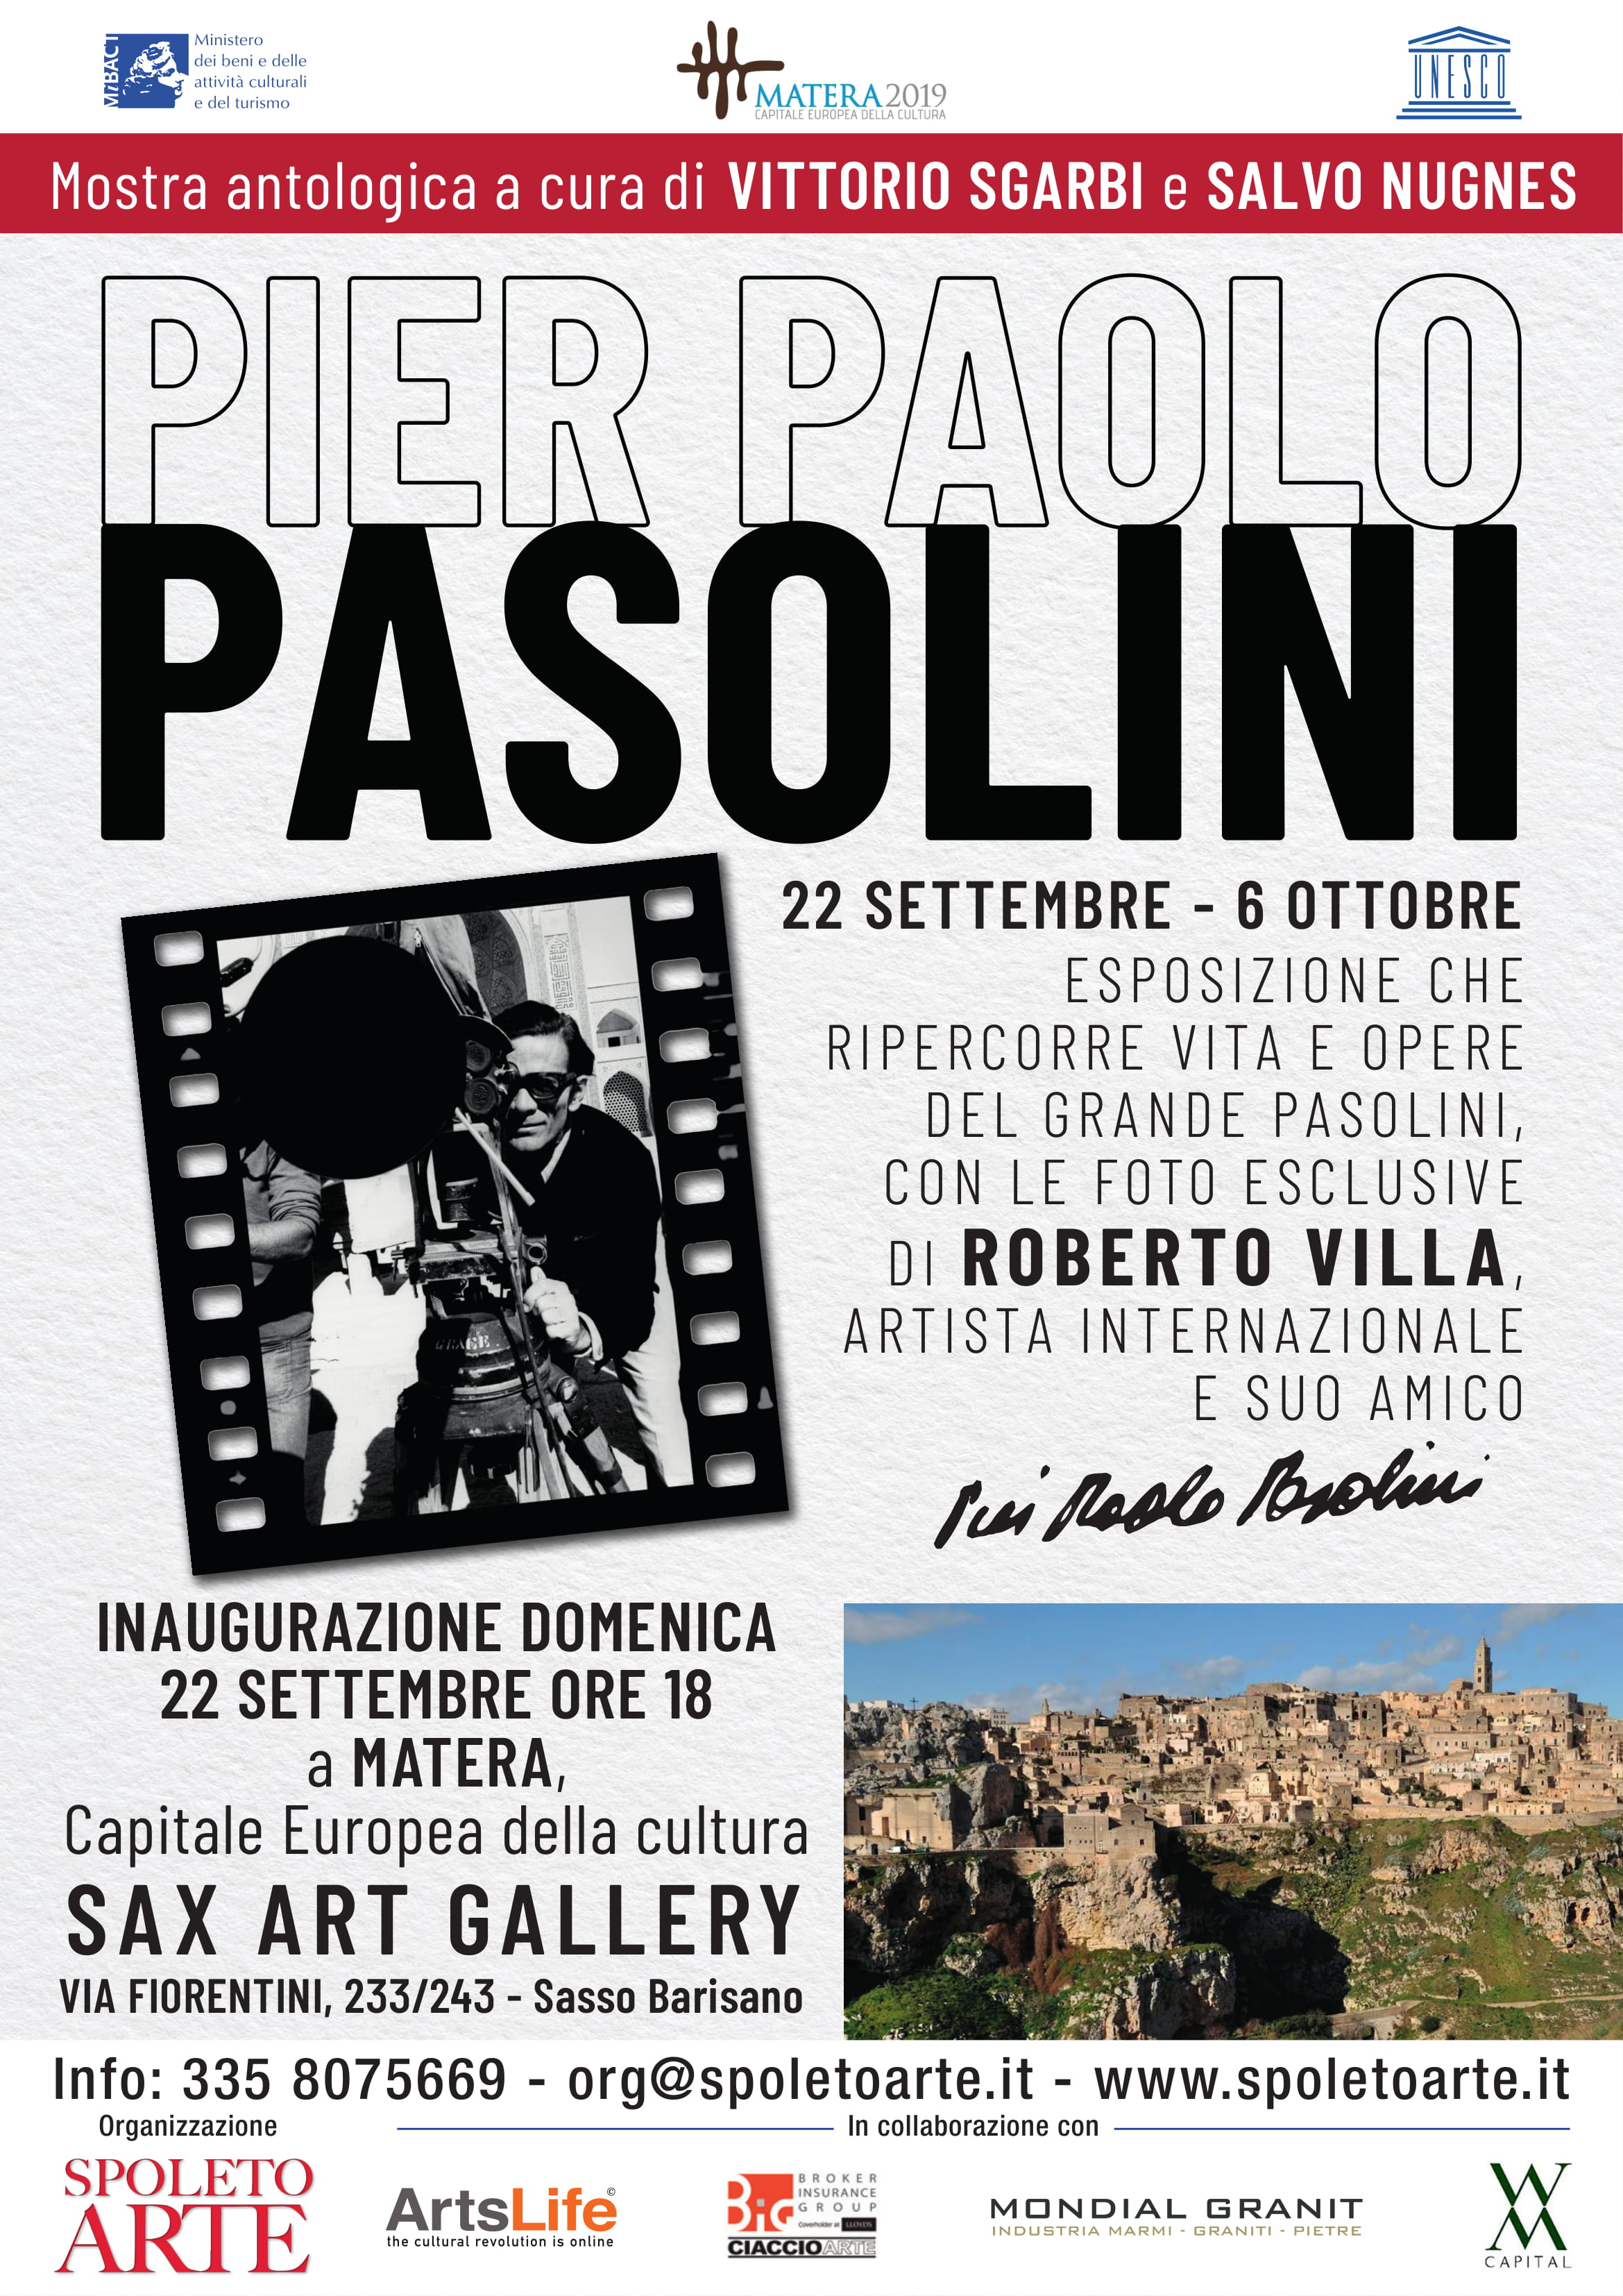 Foto 1 - Pasolini a Matera: la mostra antologica curata da Vittorio Sgarbi e Salvo Nugnes